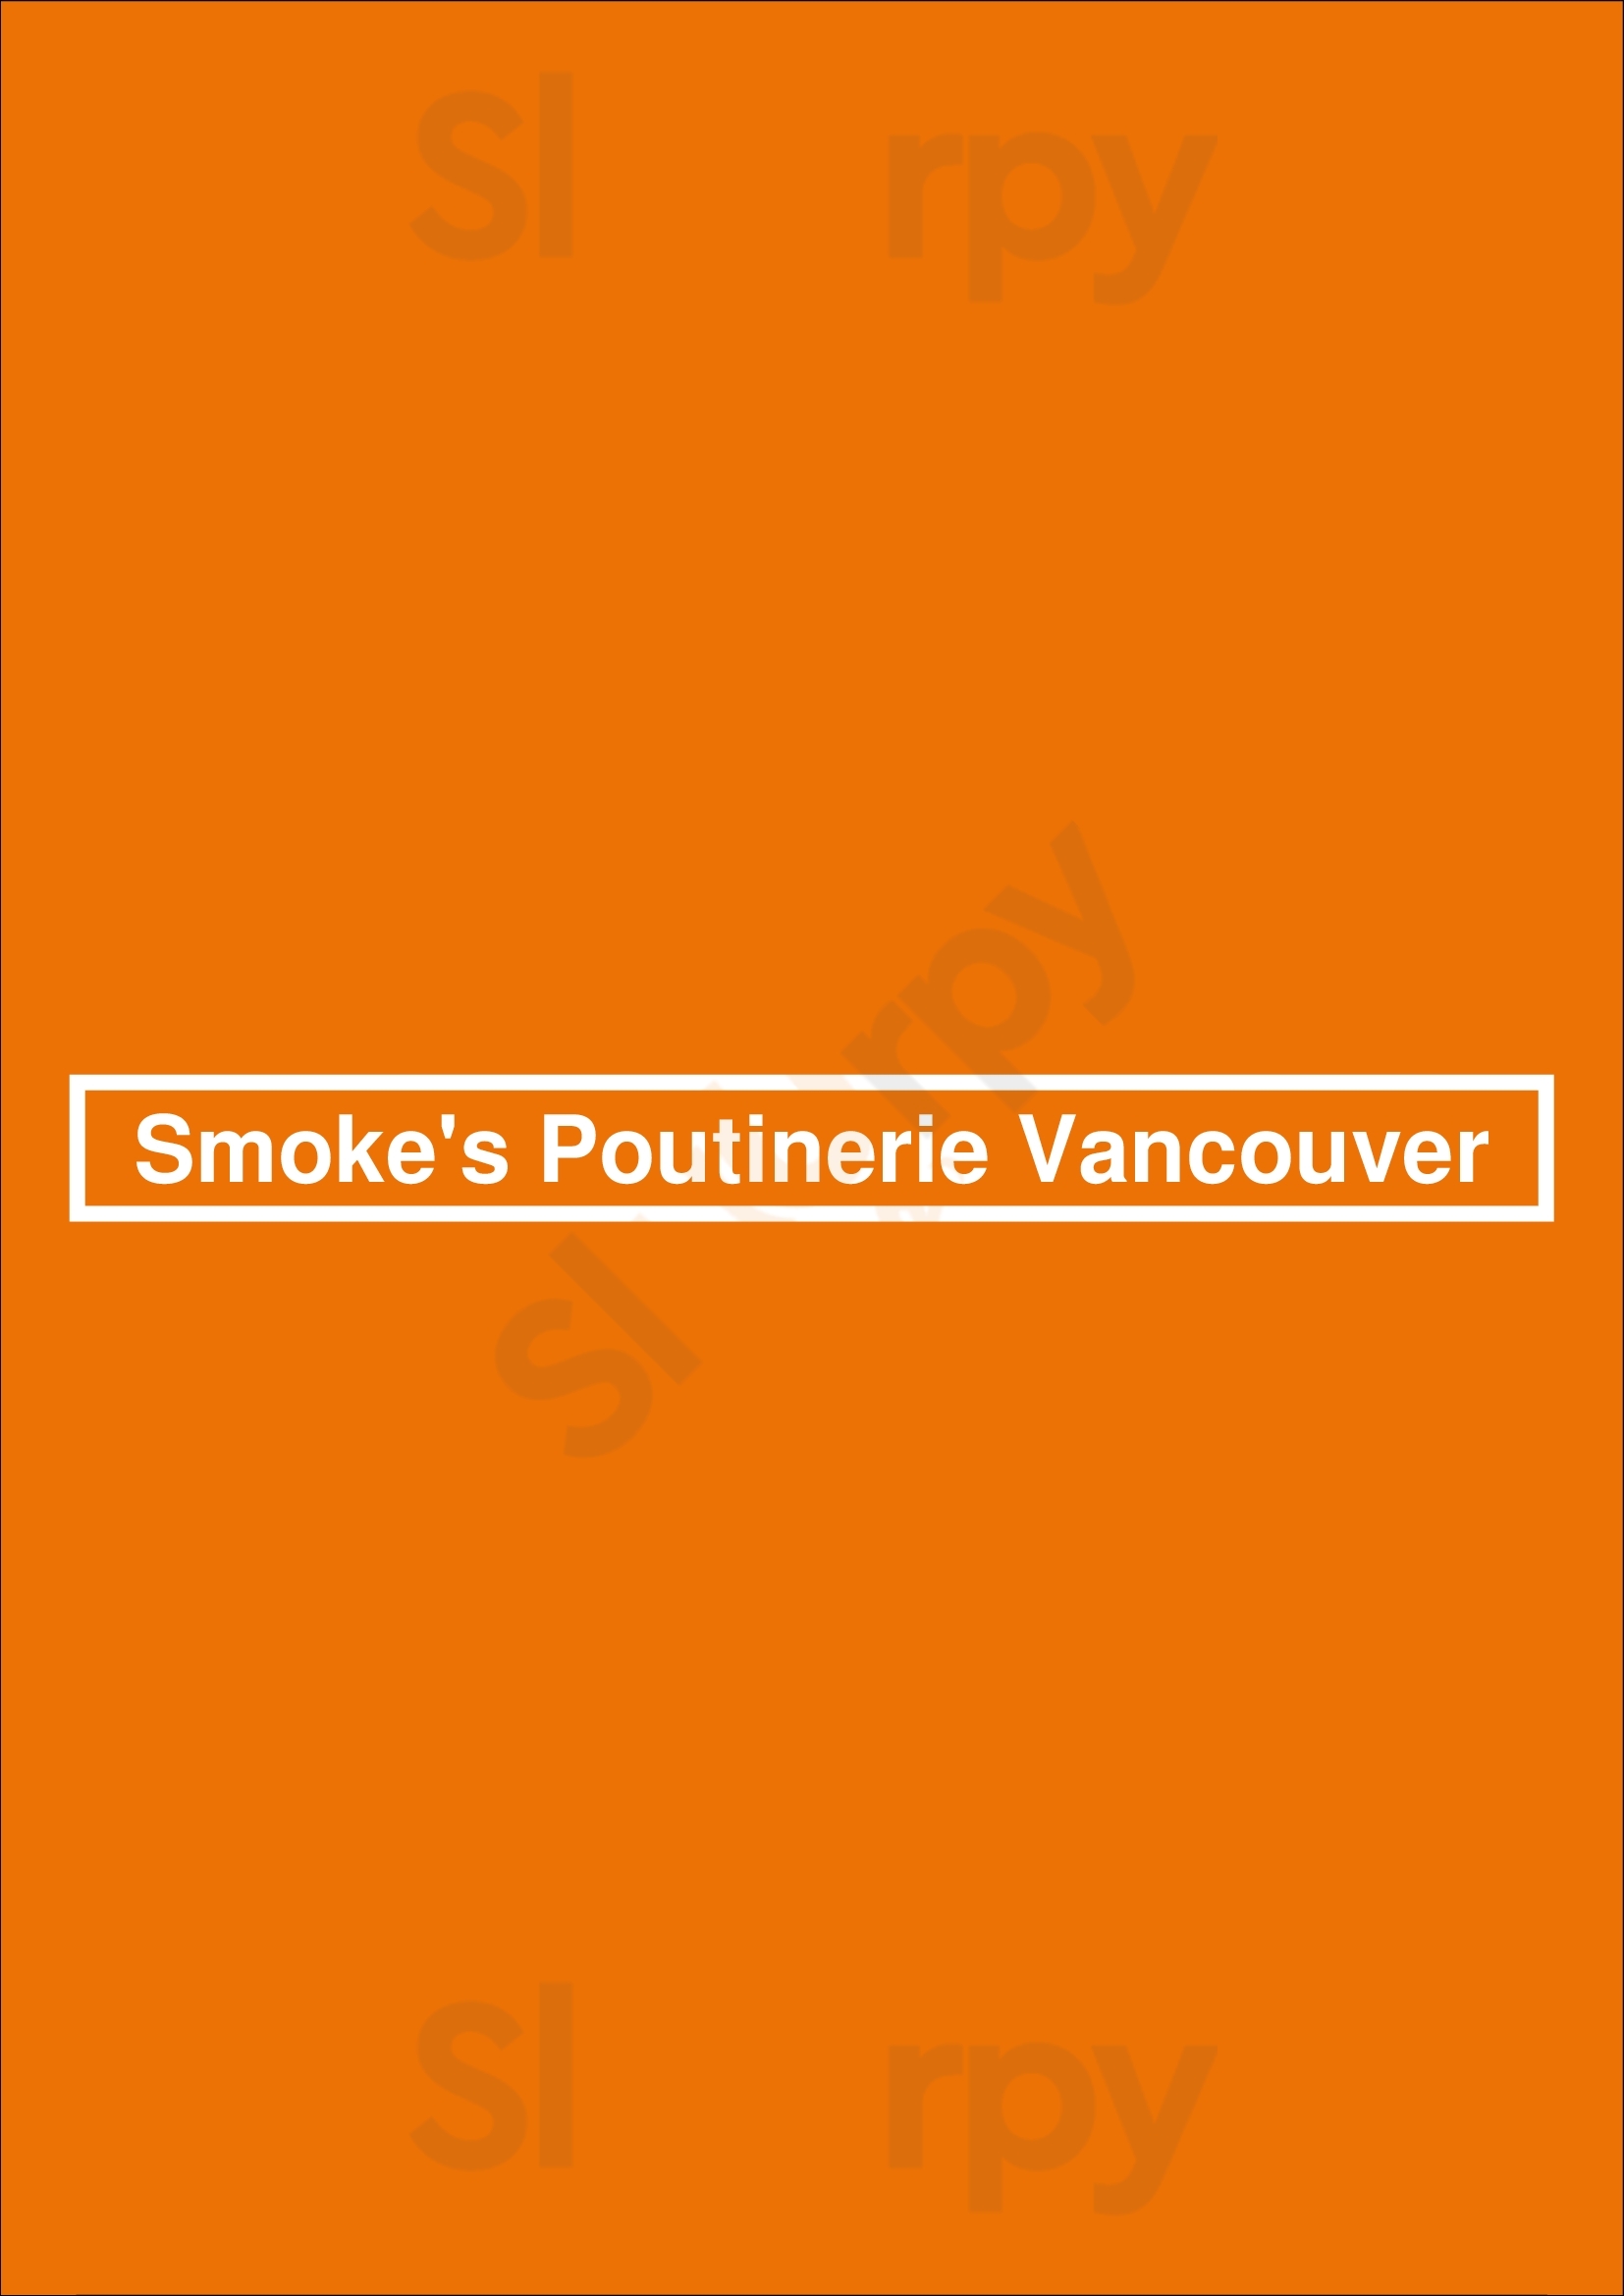 Smoke's Poutinerie Vancouver Vancouver Menu - 1